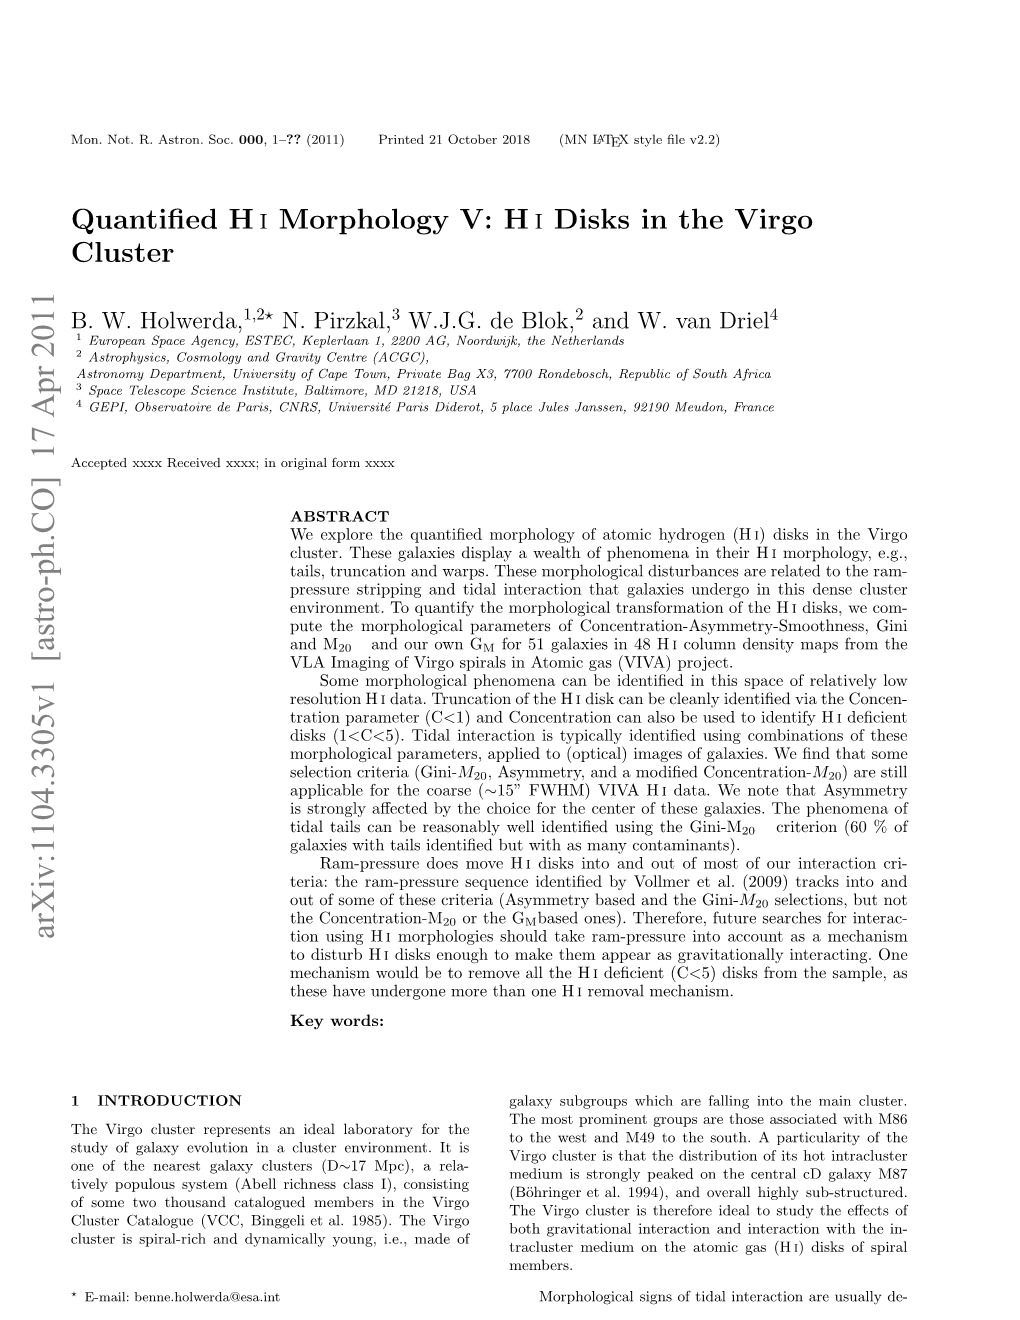 Quantified H I Morphology V: H I Disks in the Virgo Cluster